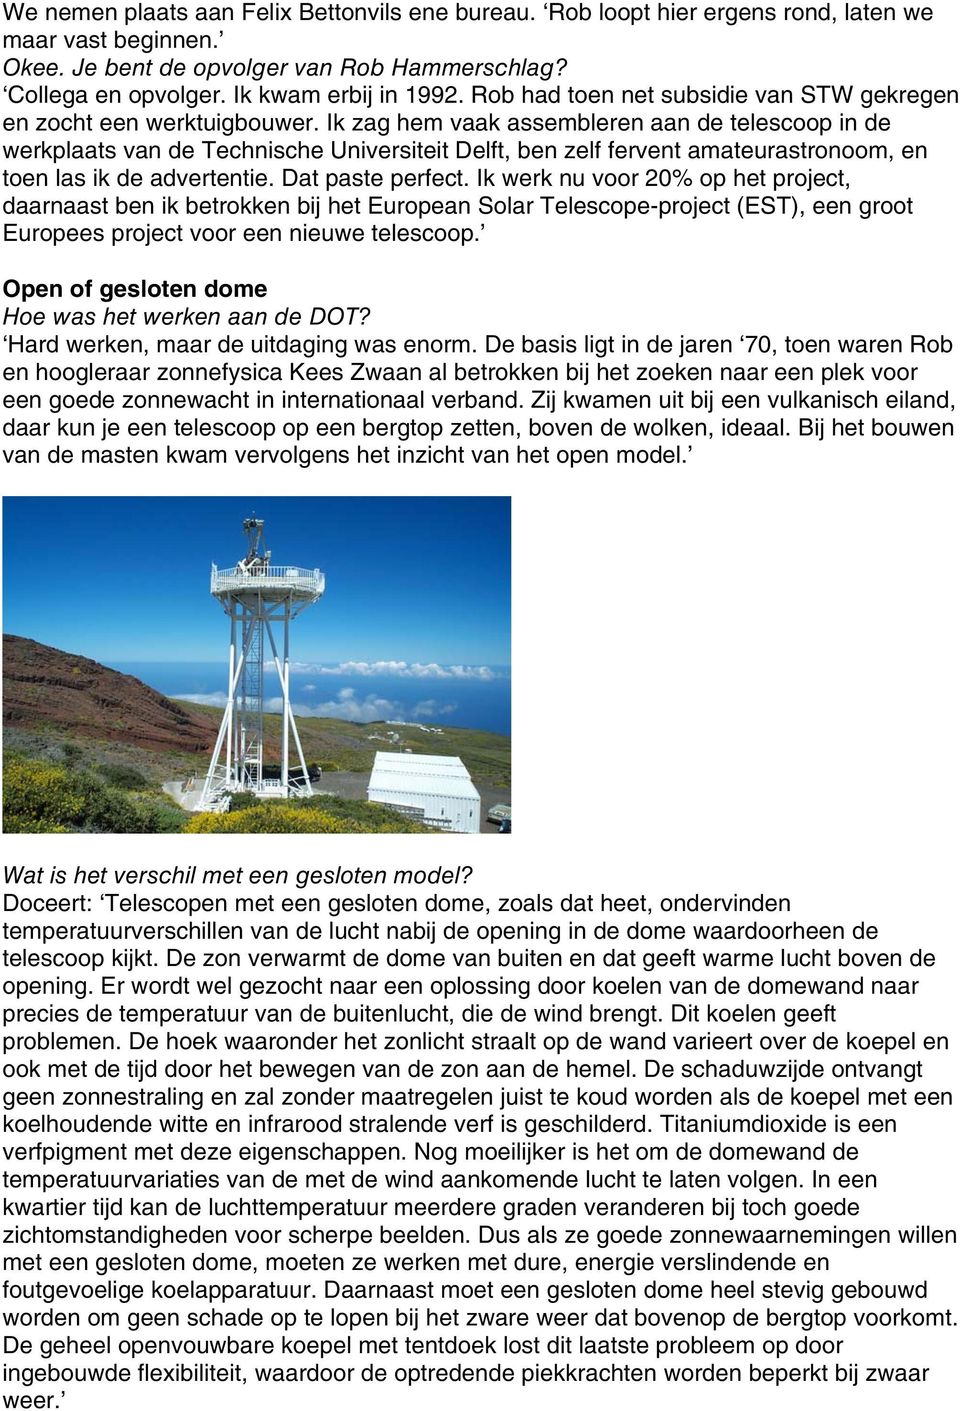 Ik zag hem vaak assembleren aan de telescoop in de werkplaats van de Technische Universiteit Delft, ben zelf fervent amateurastronoom, en toen las ik de advertentie. Dat paste perfect.